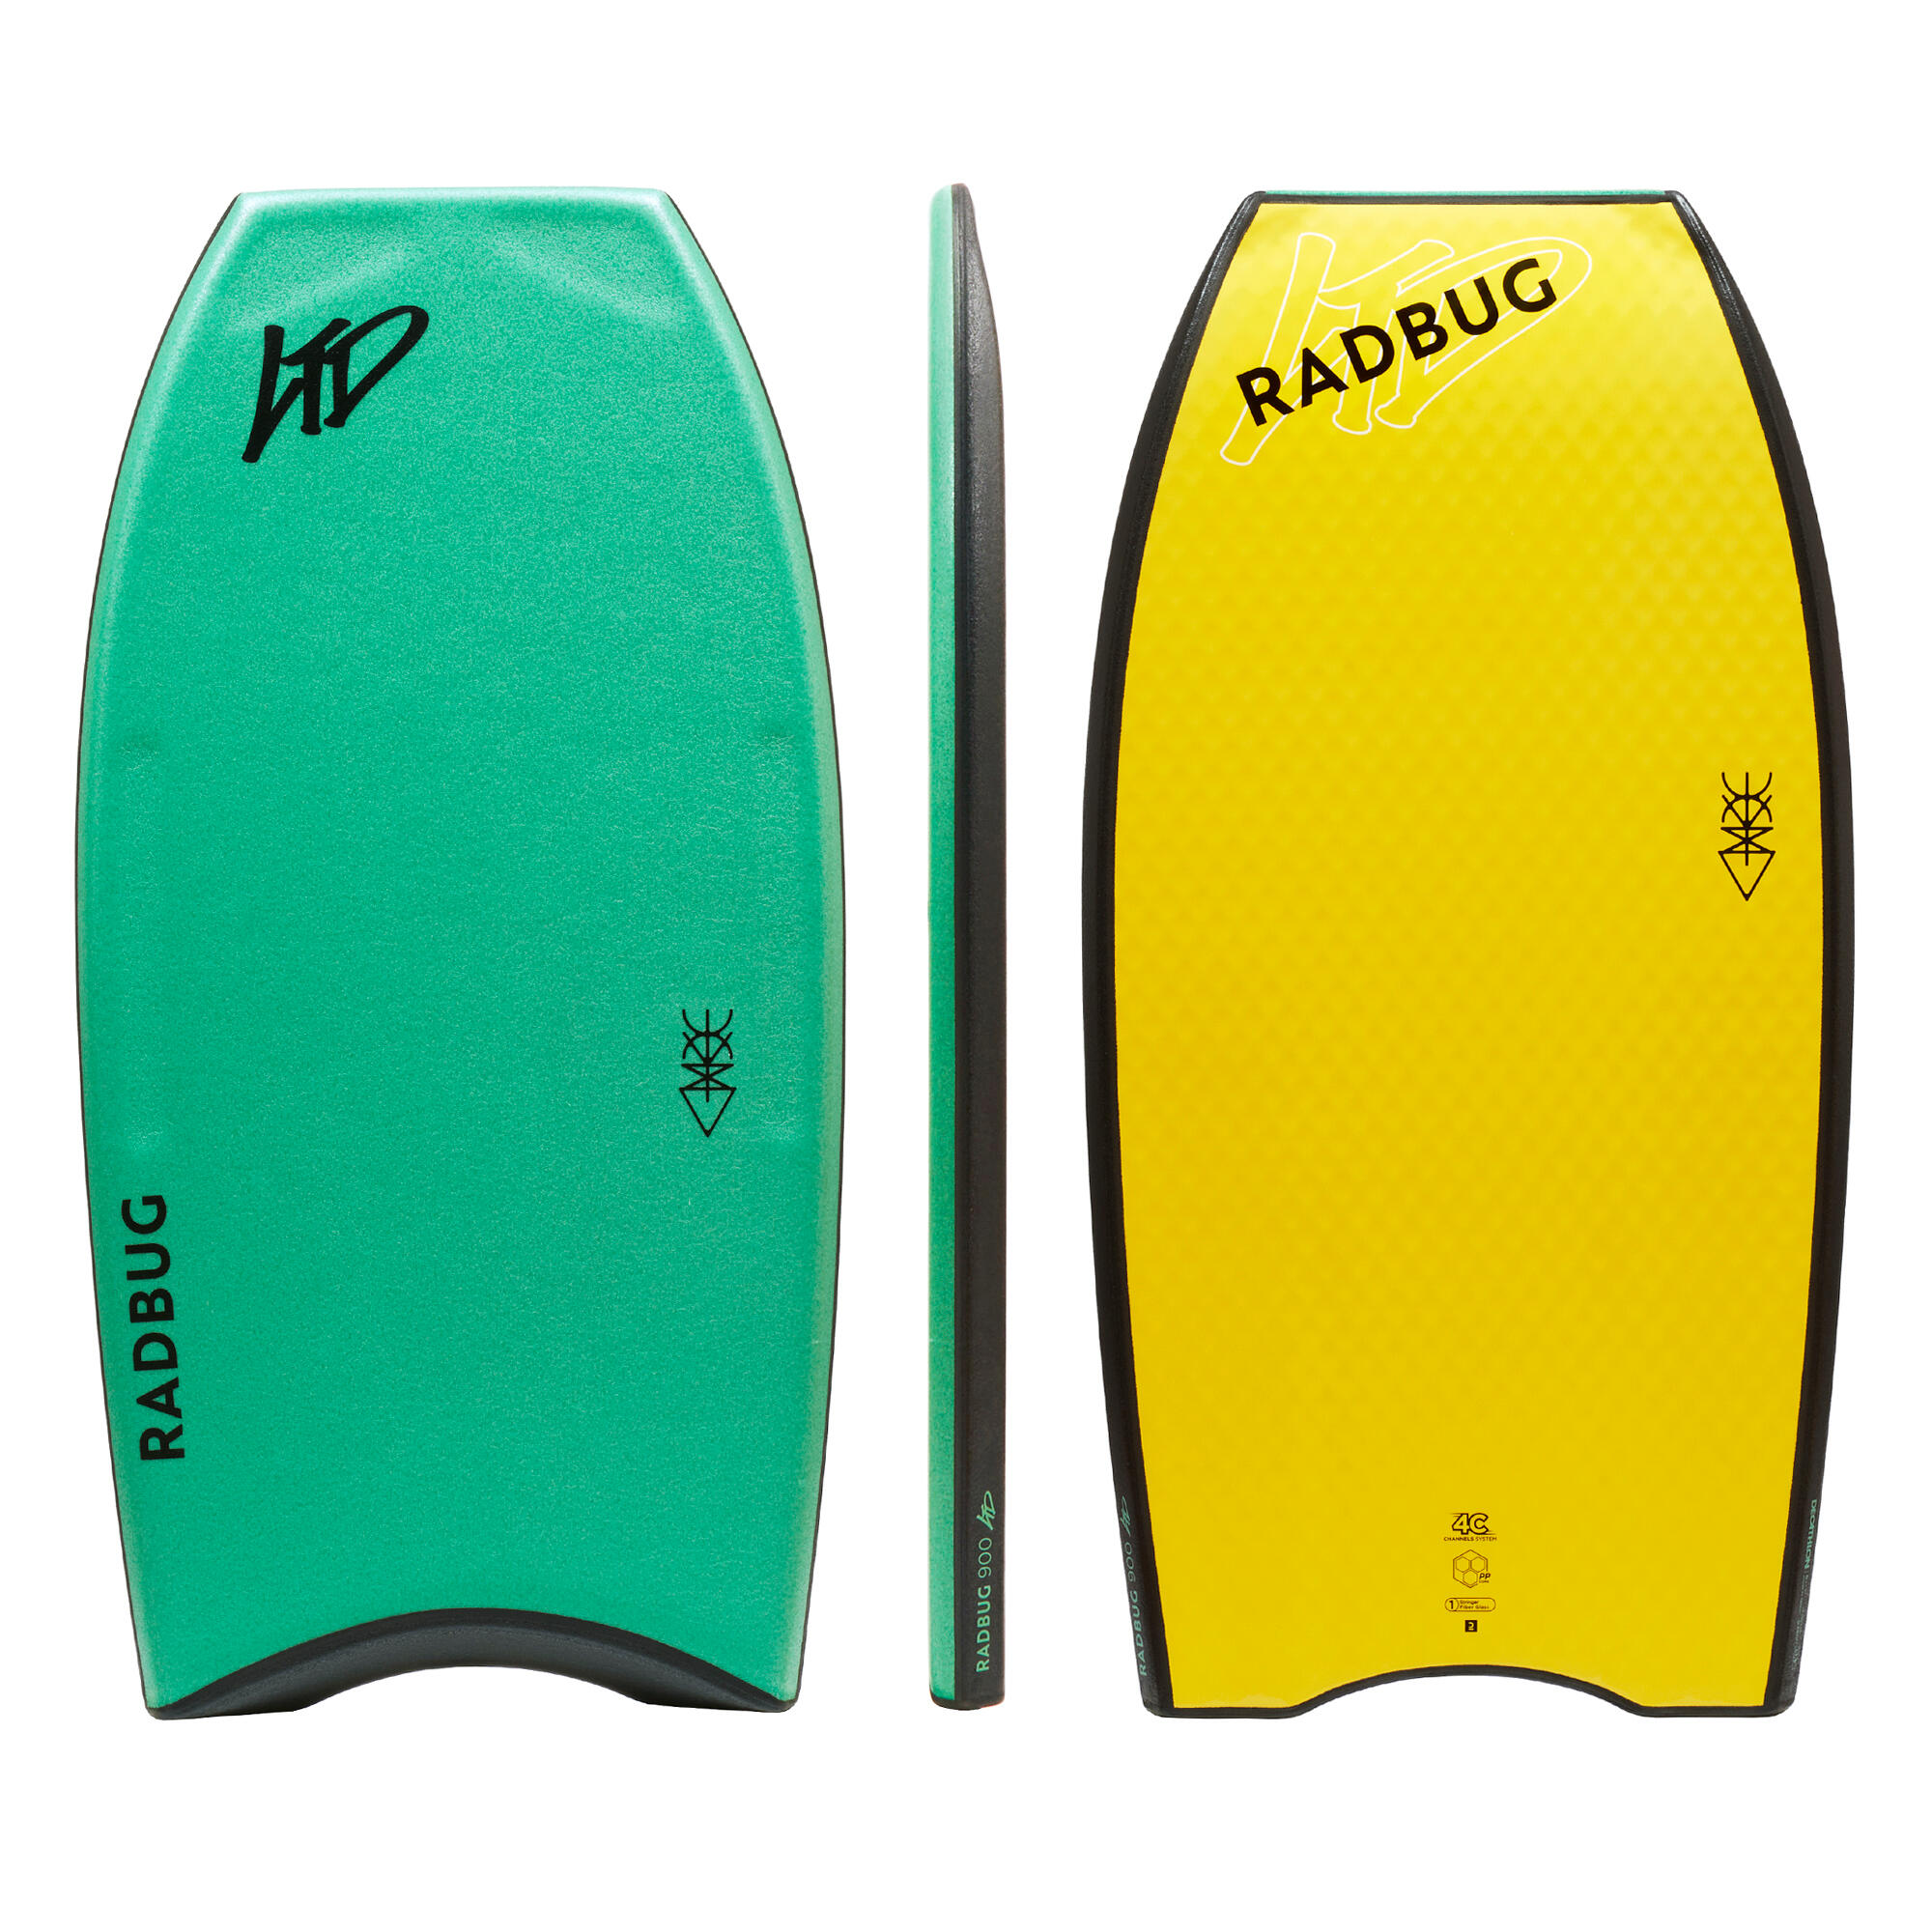 RADBUG Bodyboard 900 LTD grün/gelb – Pro Model Limited Edition 41.5